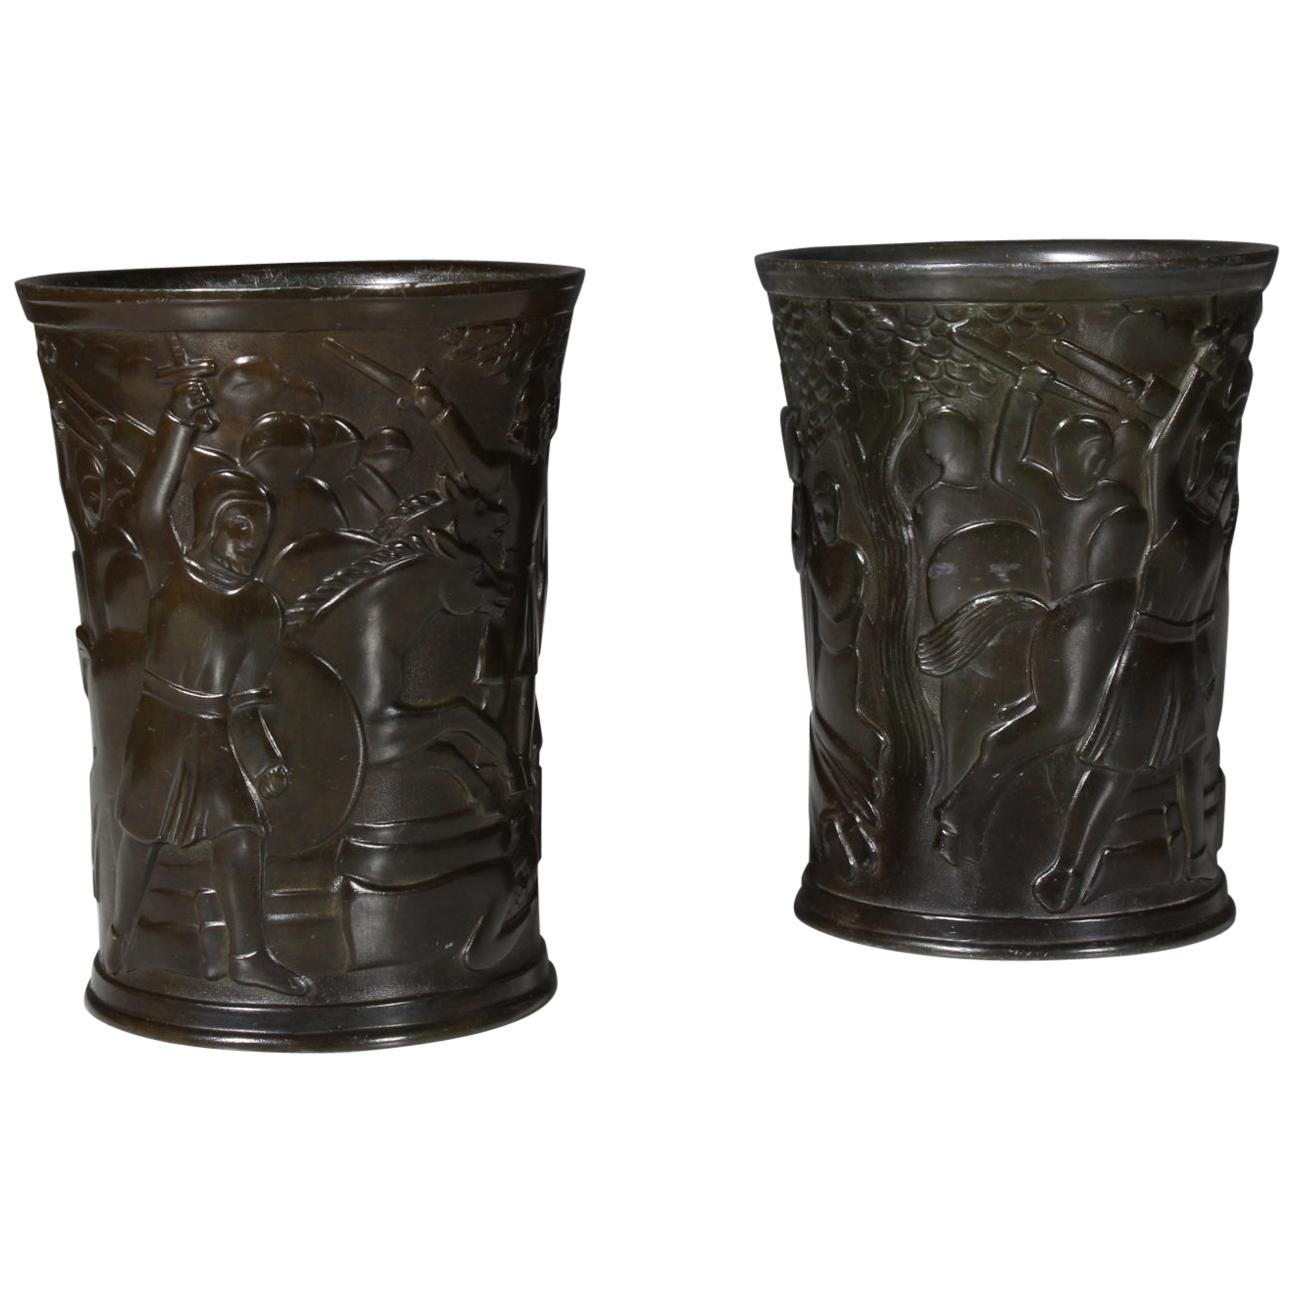 Just Andersen Danish, (1884-1943) disko metal vases, mark to underside 